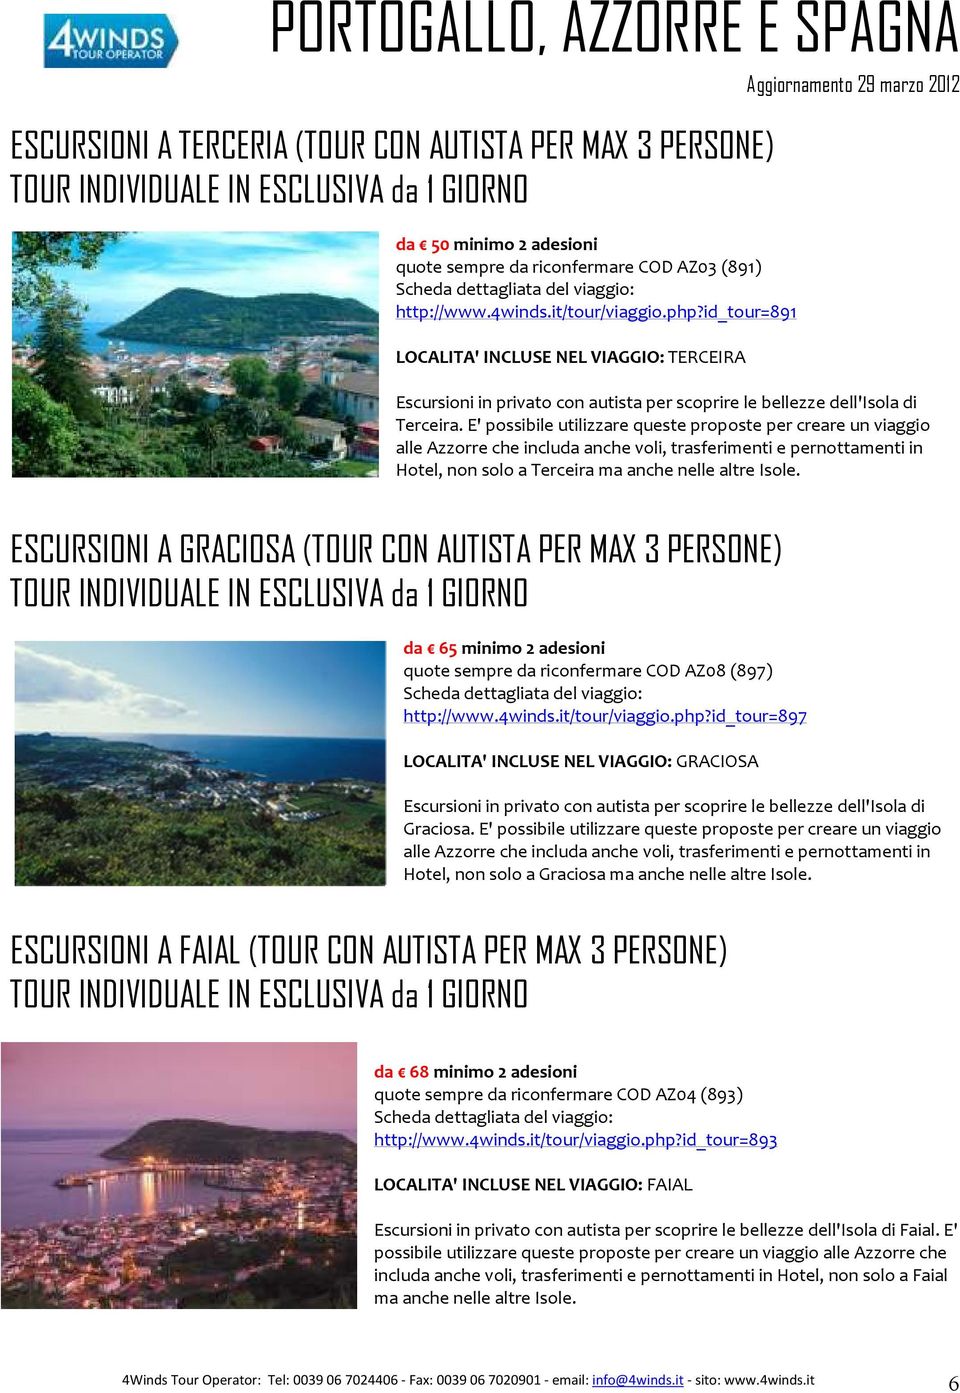 E' possibile utilizzare queste proposte per creare un viaggio alle Azzorre che includa anche voli, trasferimenti e pernottamenti in Hotel, non solo a Terceira ma anche nelle altre Isole.